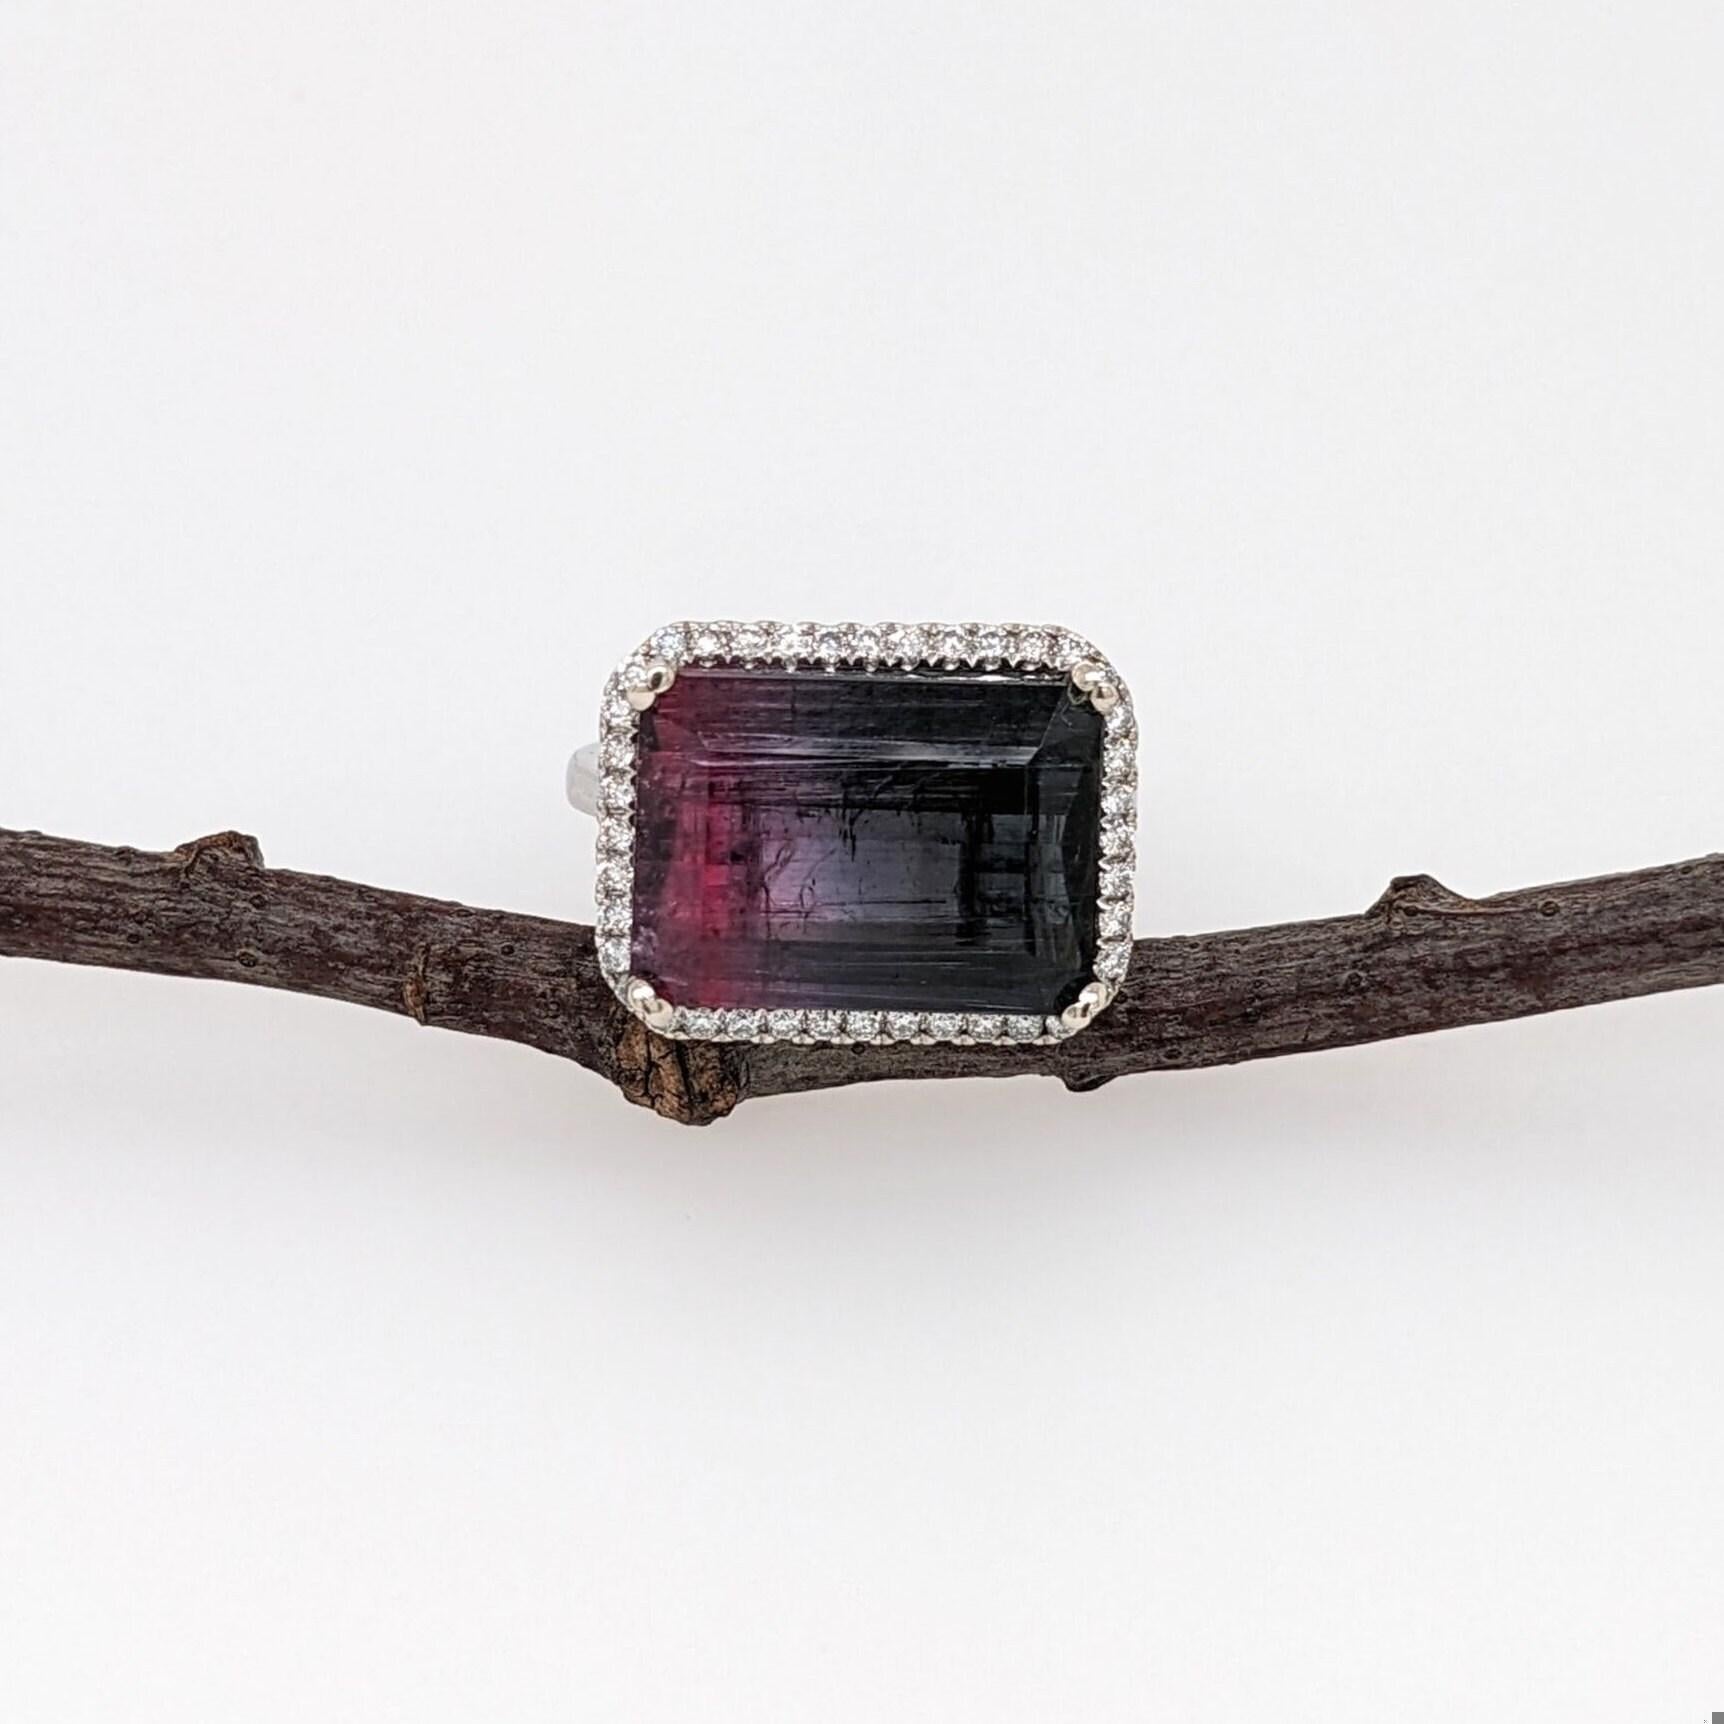 Wunderschöner zweifarbiger Turmalin mit satten rosa/violetten und schwarzen Farben, hervorgehoben durch einen Heiligenschein aus funkelnden Diamanten. Dieser Ring ist ein tolles Statement!

Spezifikationen:

Artikel Typ: Ring
Mittelstein: